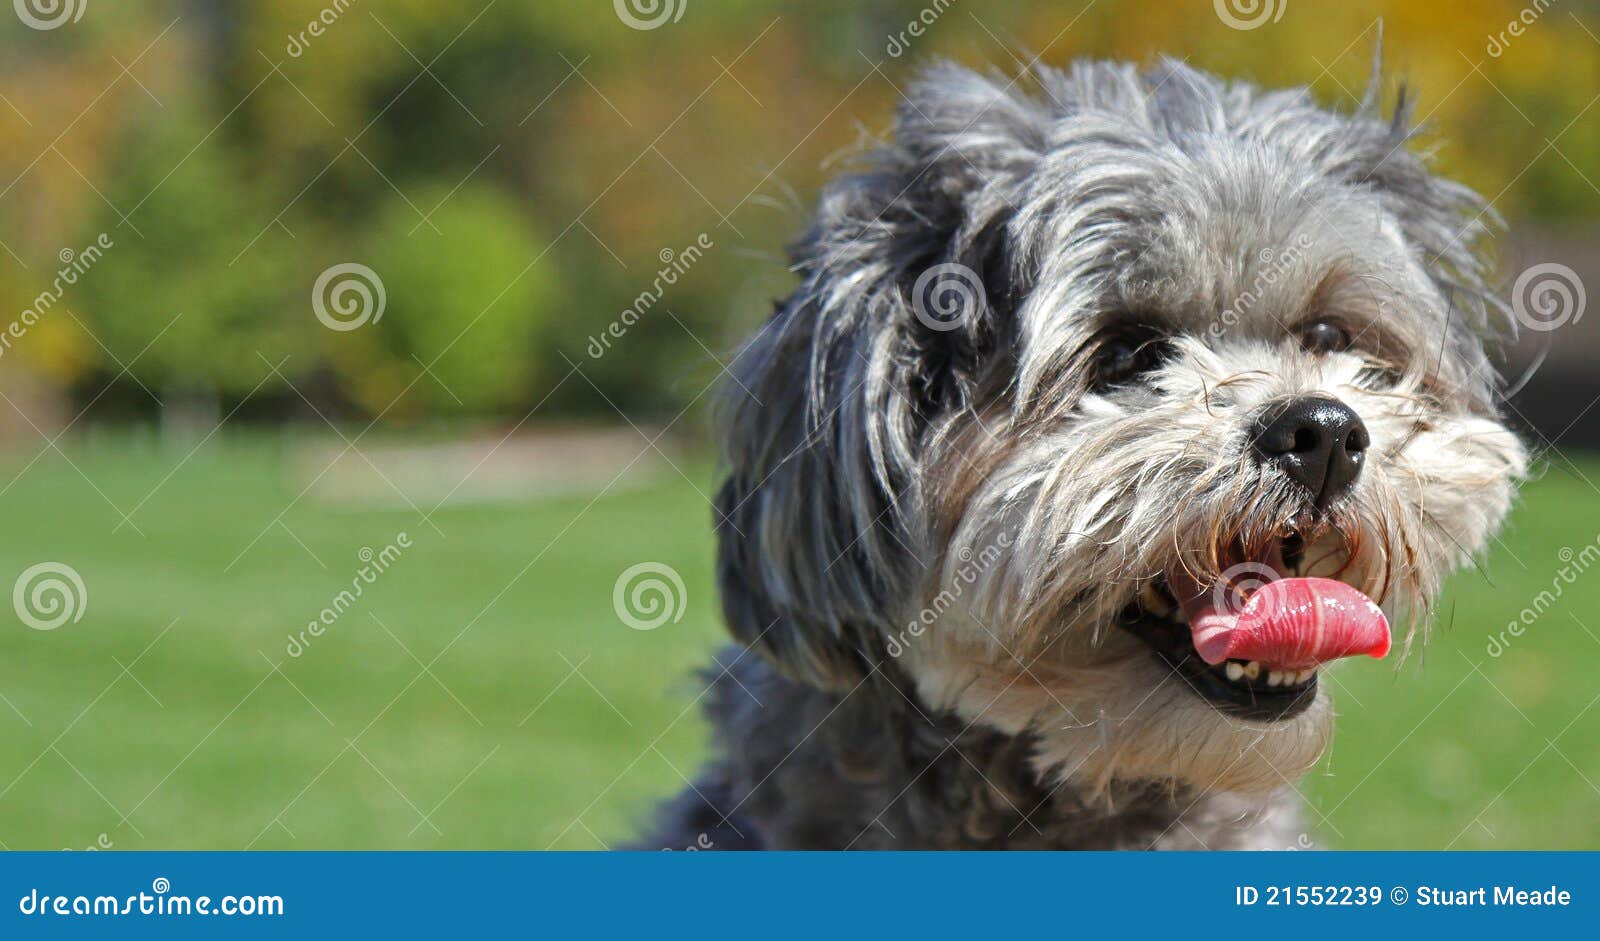 cute shih-poo dog with tongue